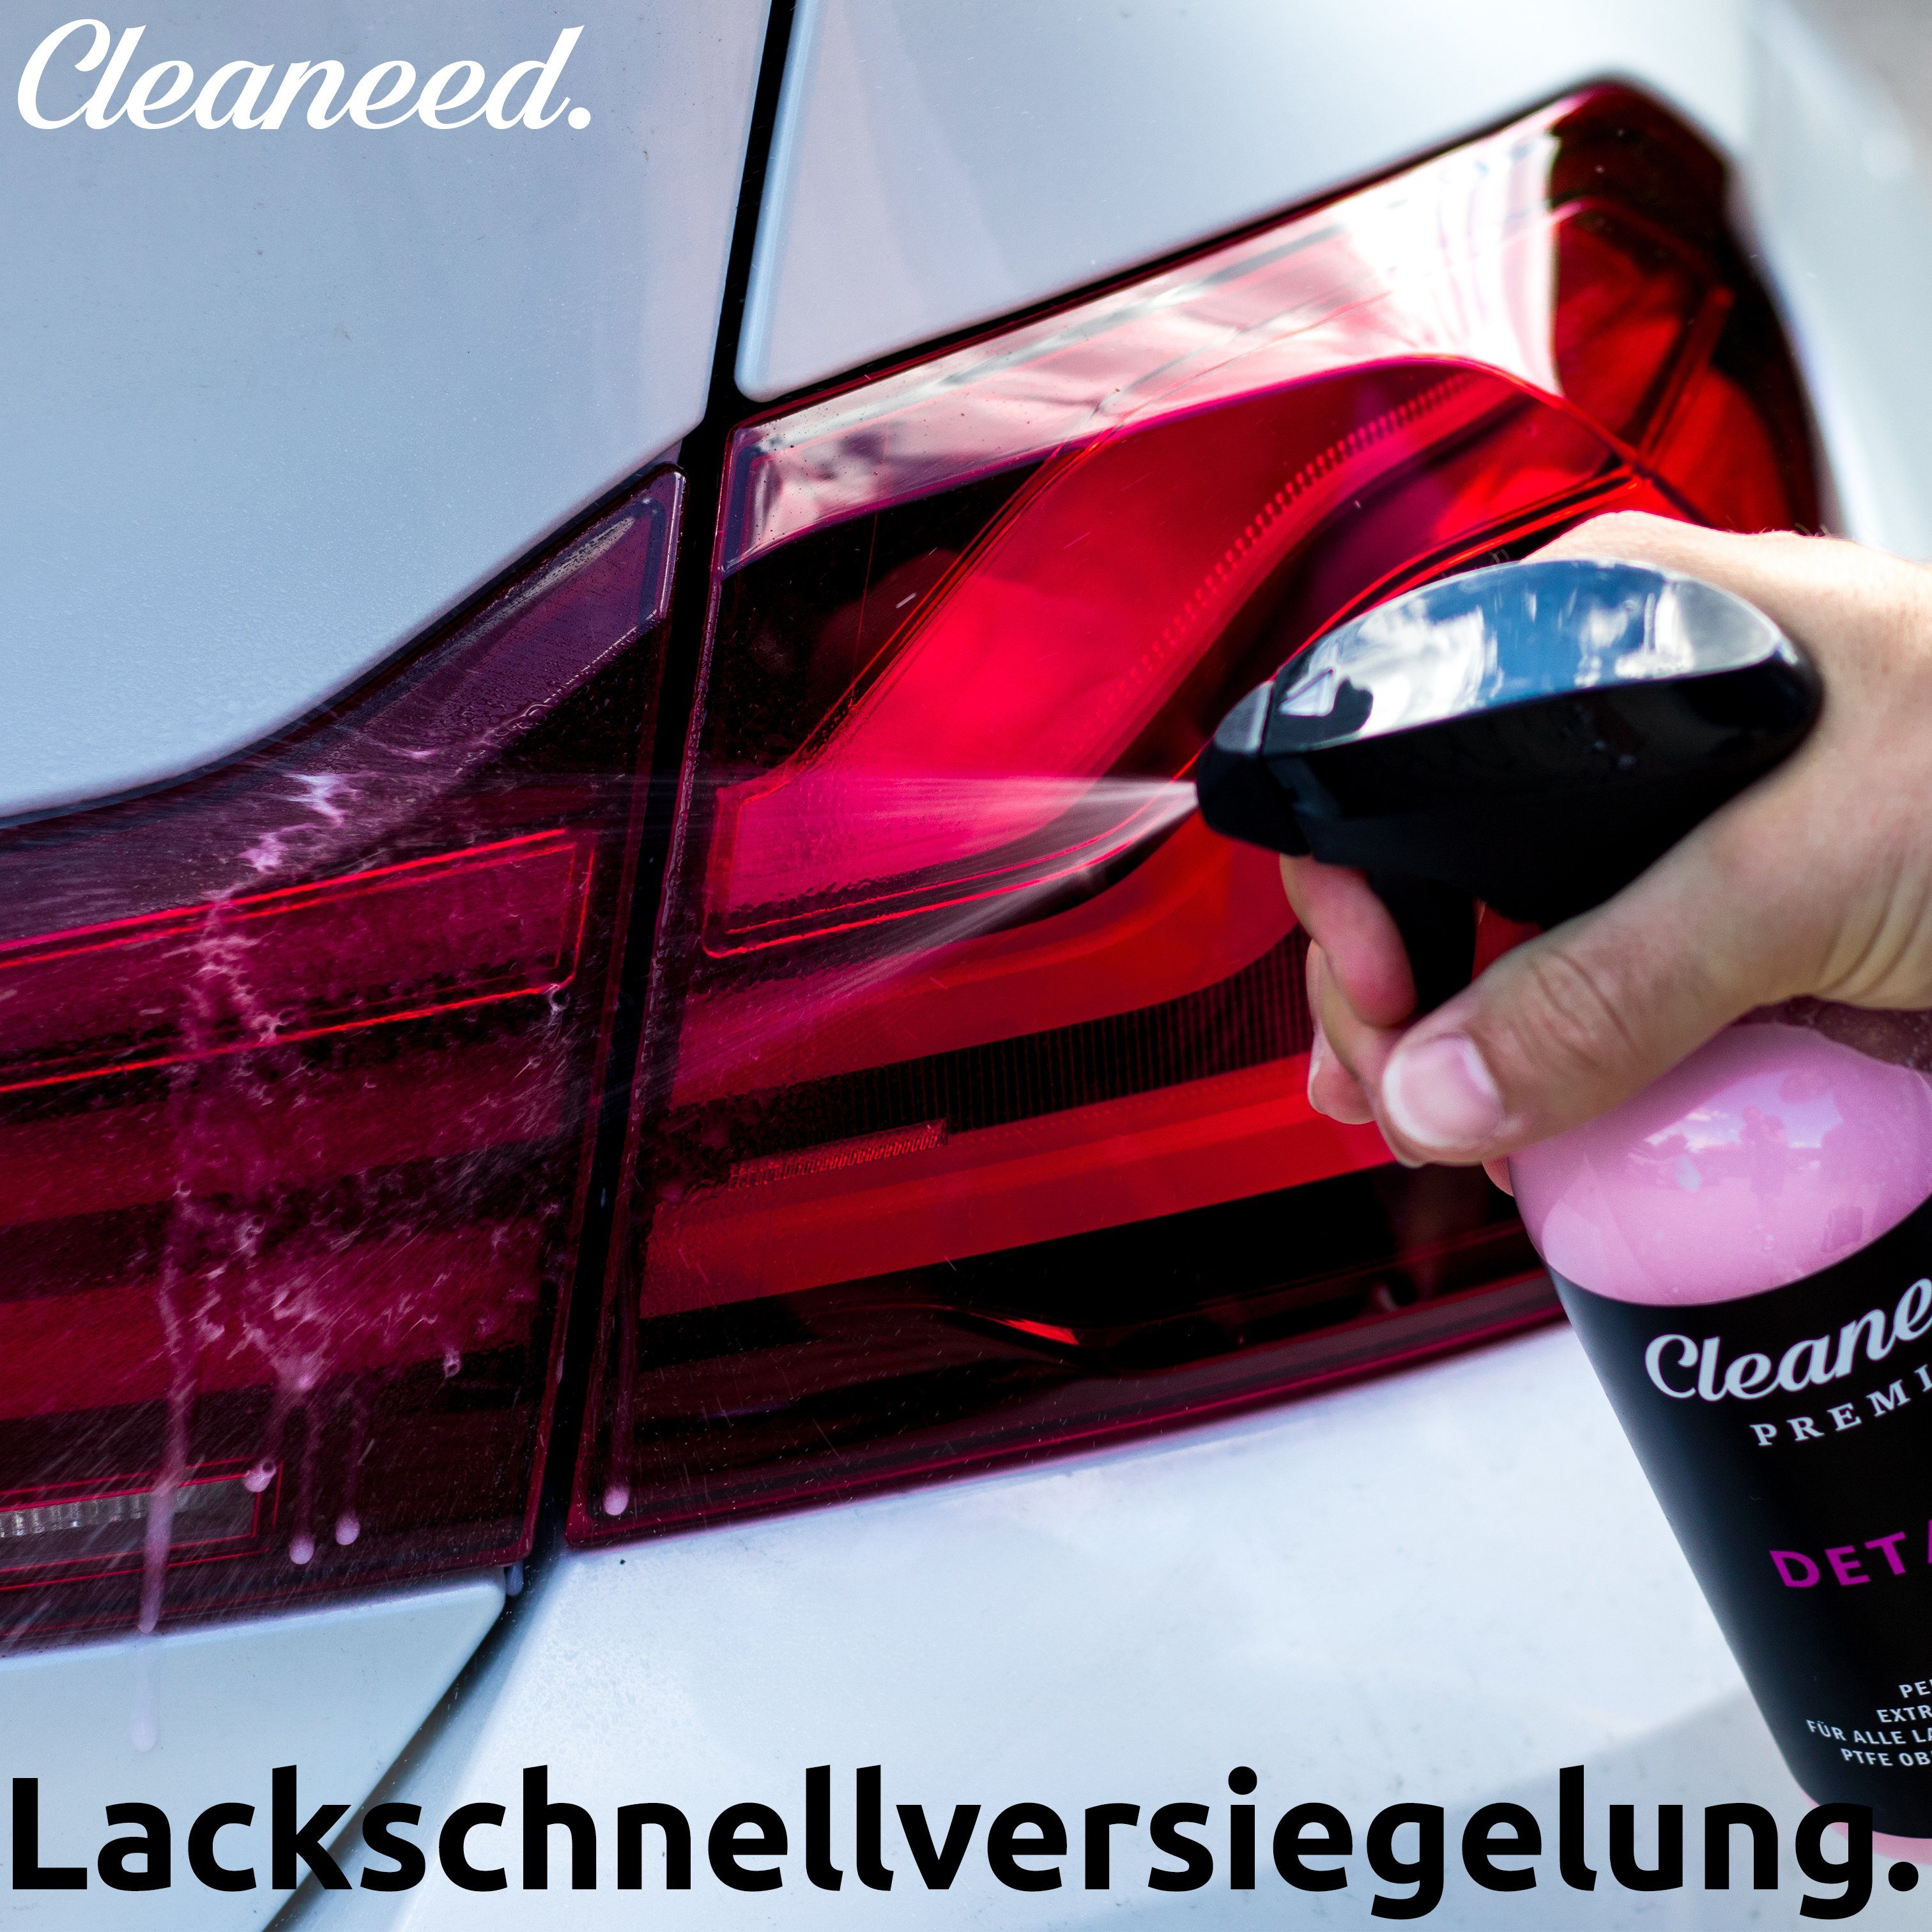 Wax starkem Wachs Glanz Detailer Lackschnellversiegelung Premium Cleaneed in zur und Carnauba extra Trockenwäsche (Made Sprühwachs - Germany), mit